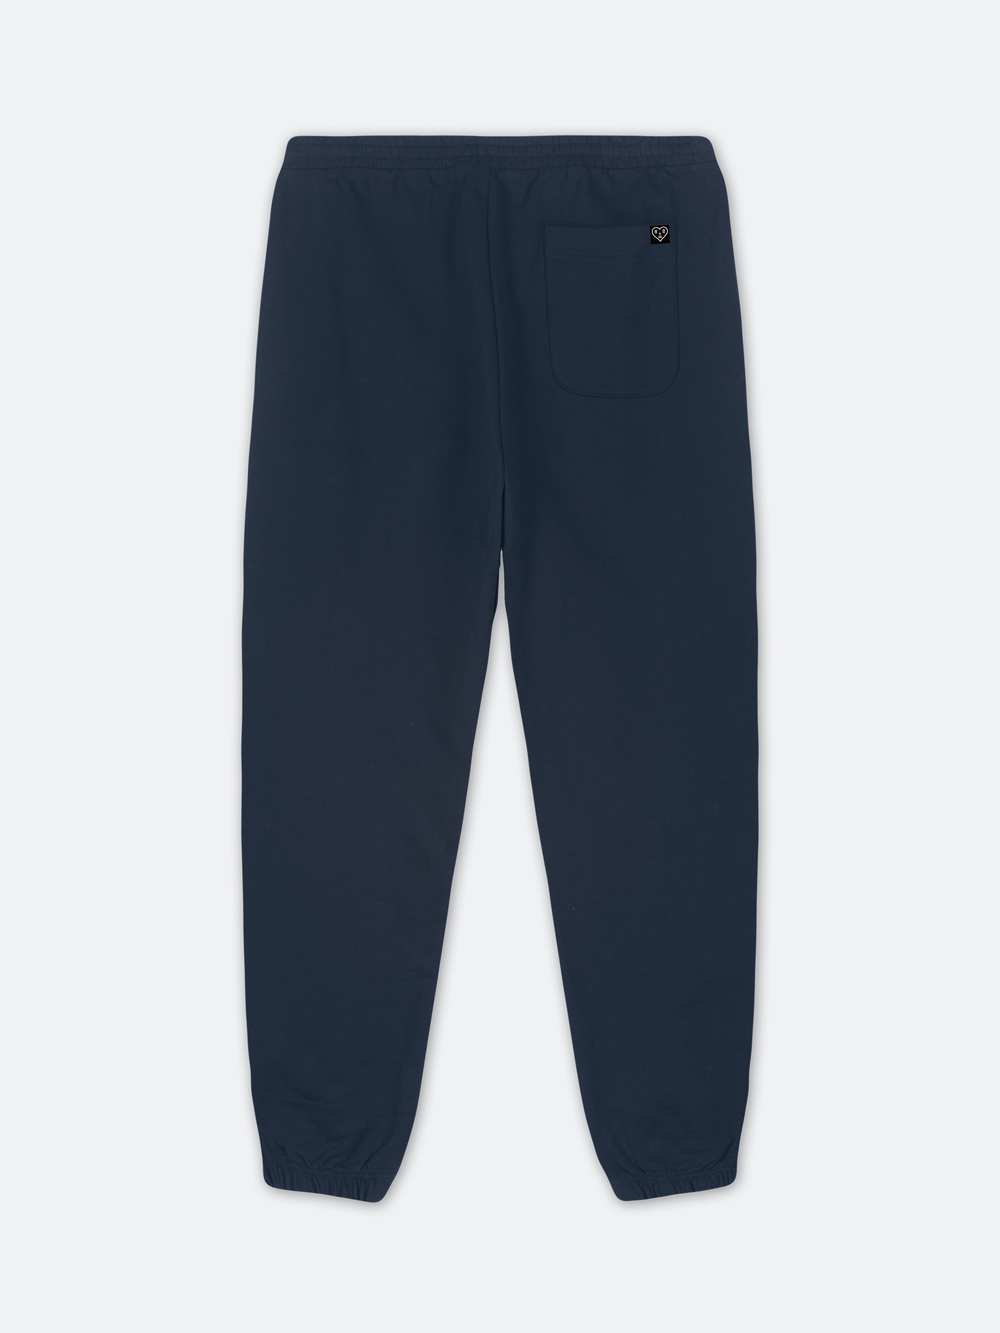 STENCIL SMALL PRESTIGE Sweat Pants (Navy)